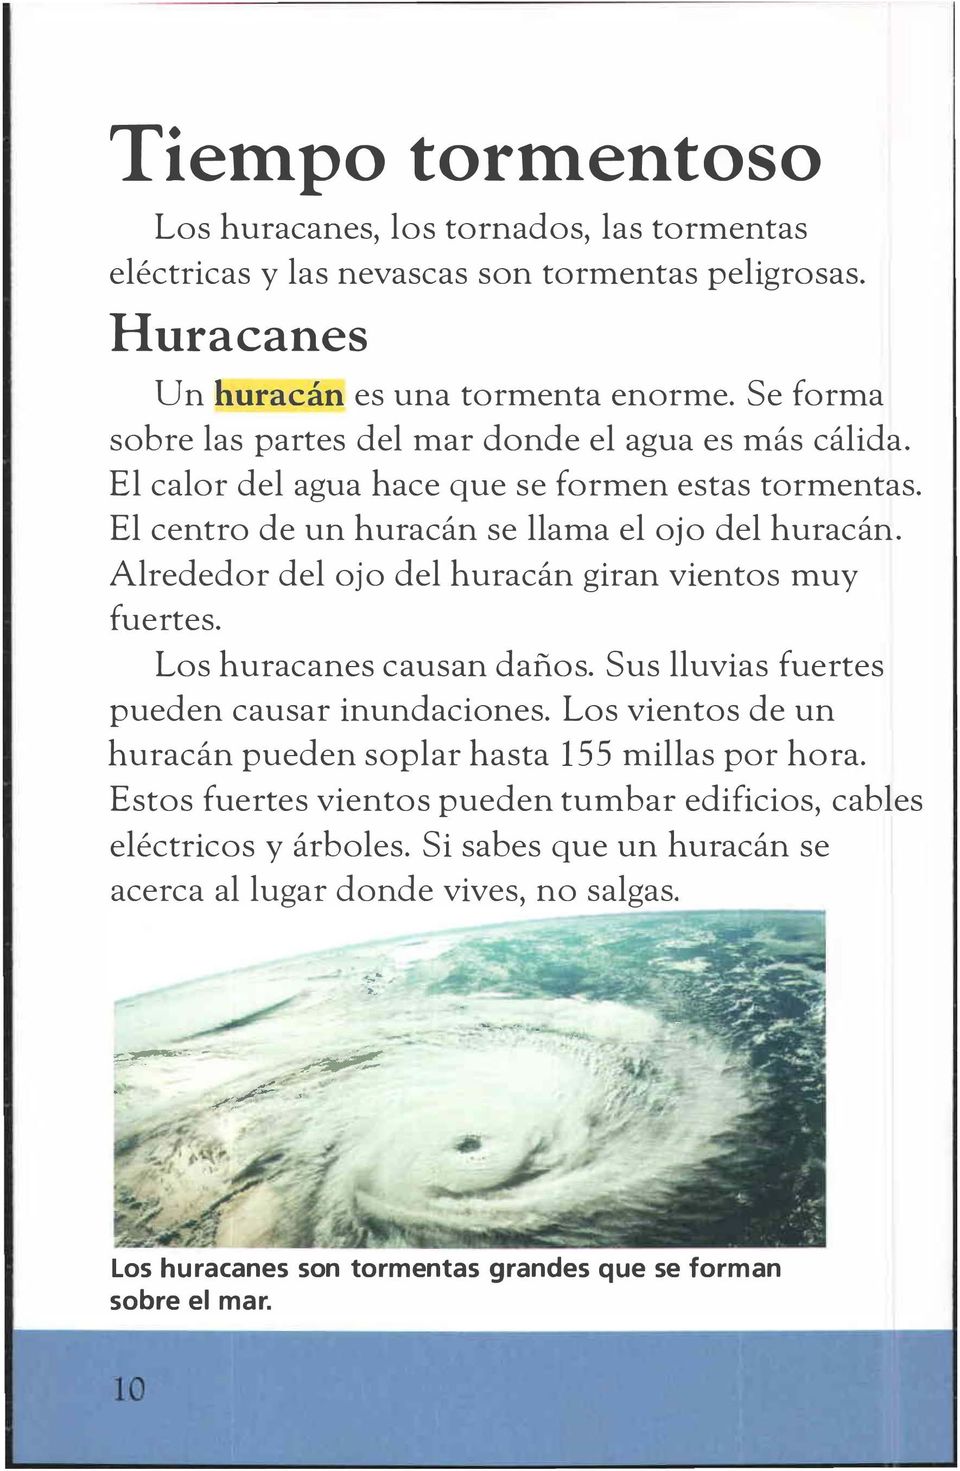 Alrededor del ojo del huracán giran vientos muy fuertes. Los huracanes causan daños. Sus lluvias fuertes pueden causar inundaciones.